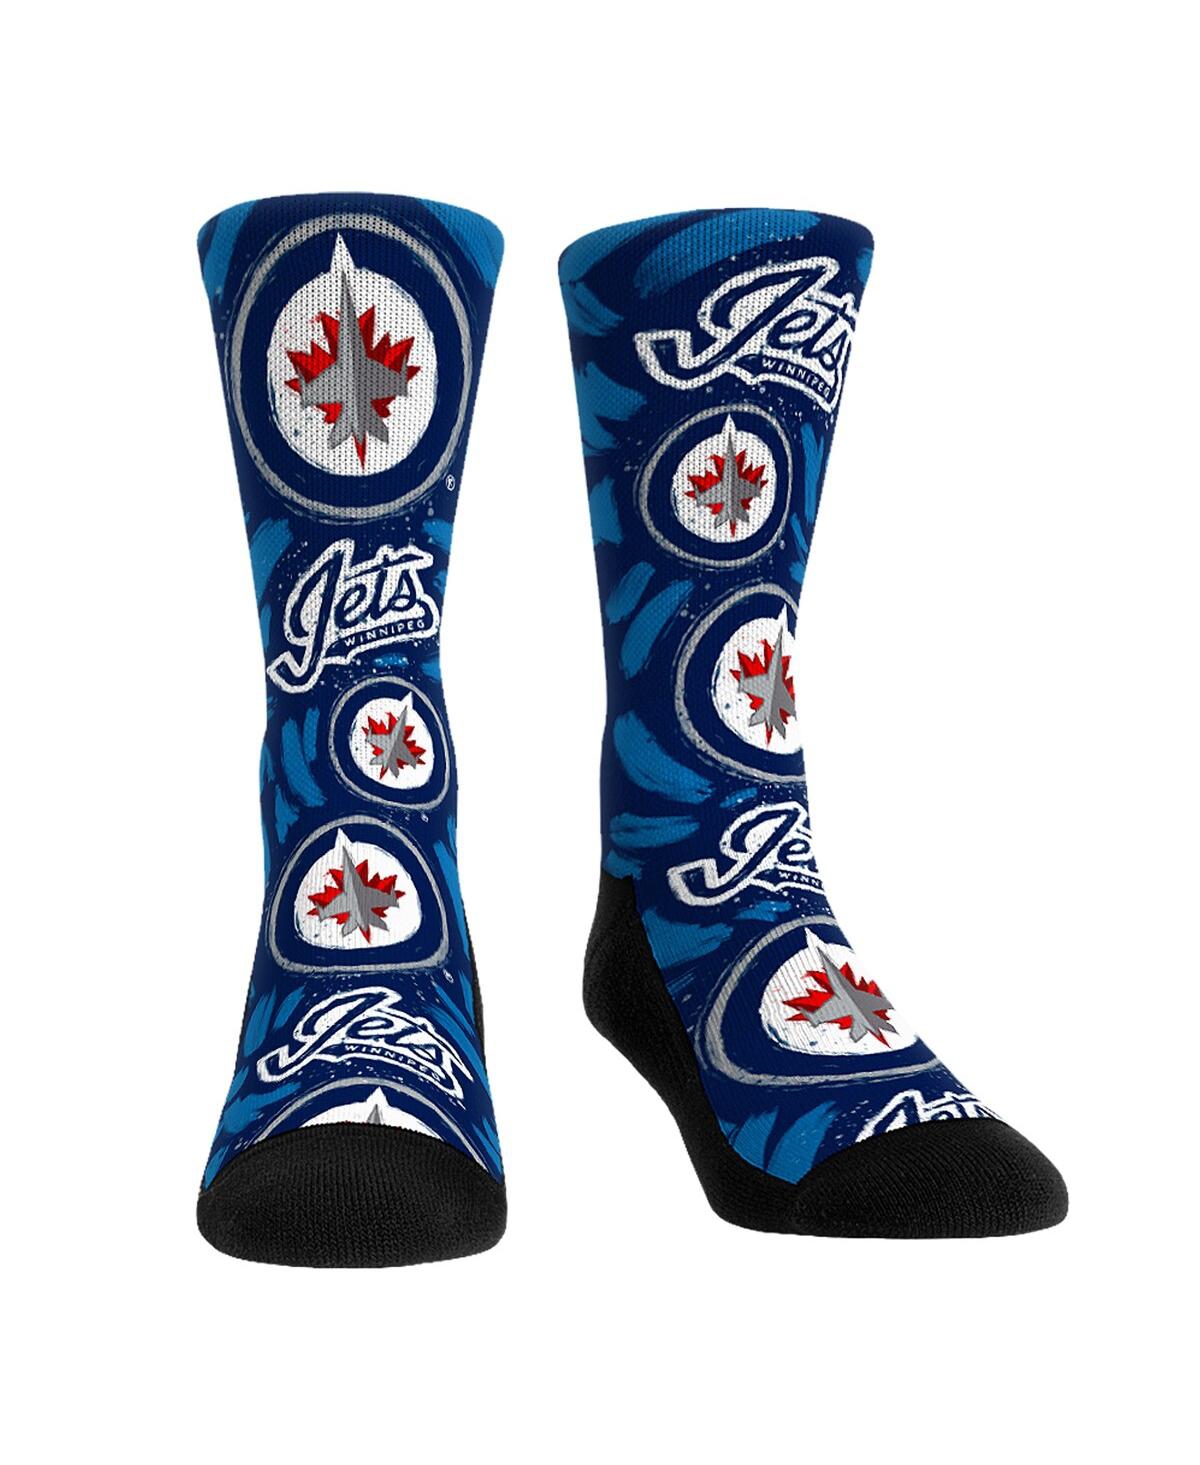 Men's and Women's Rock 'Em Socks Winnipeg Jets Allover Logo and Paint Crew Socks - Multi